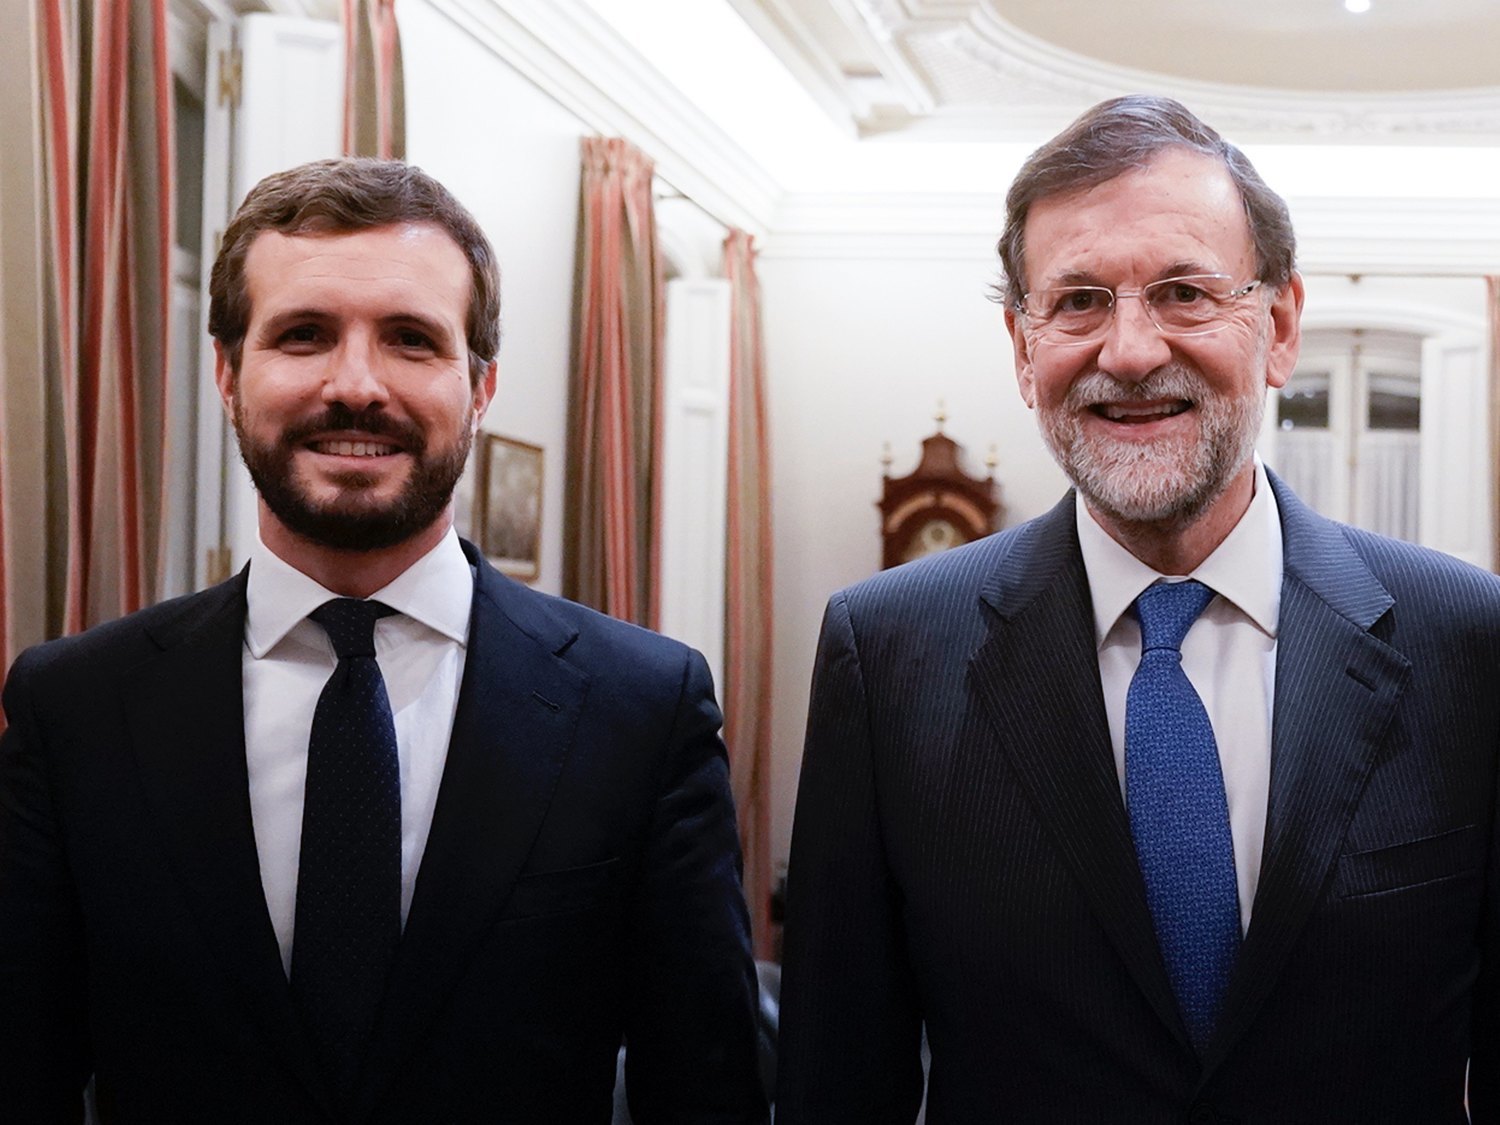 La huída hacia adelante del PP en Cataluña: qué implica que Casado reniegue del papel de Rajoy el 1-0